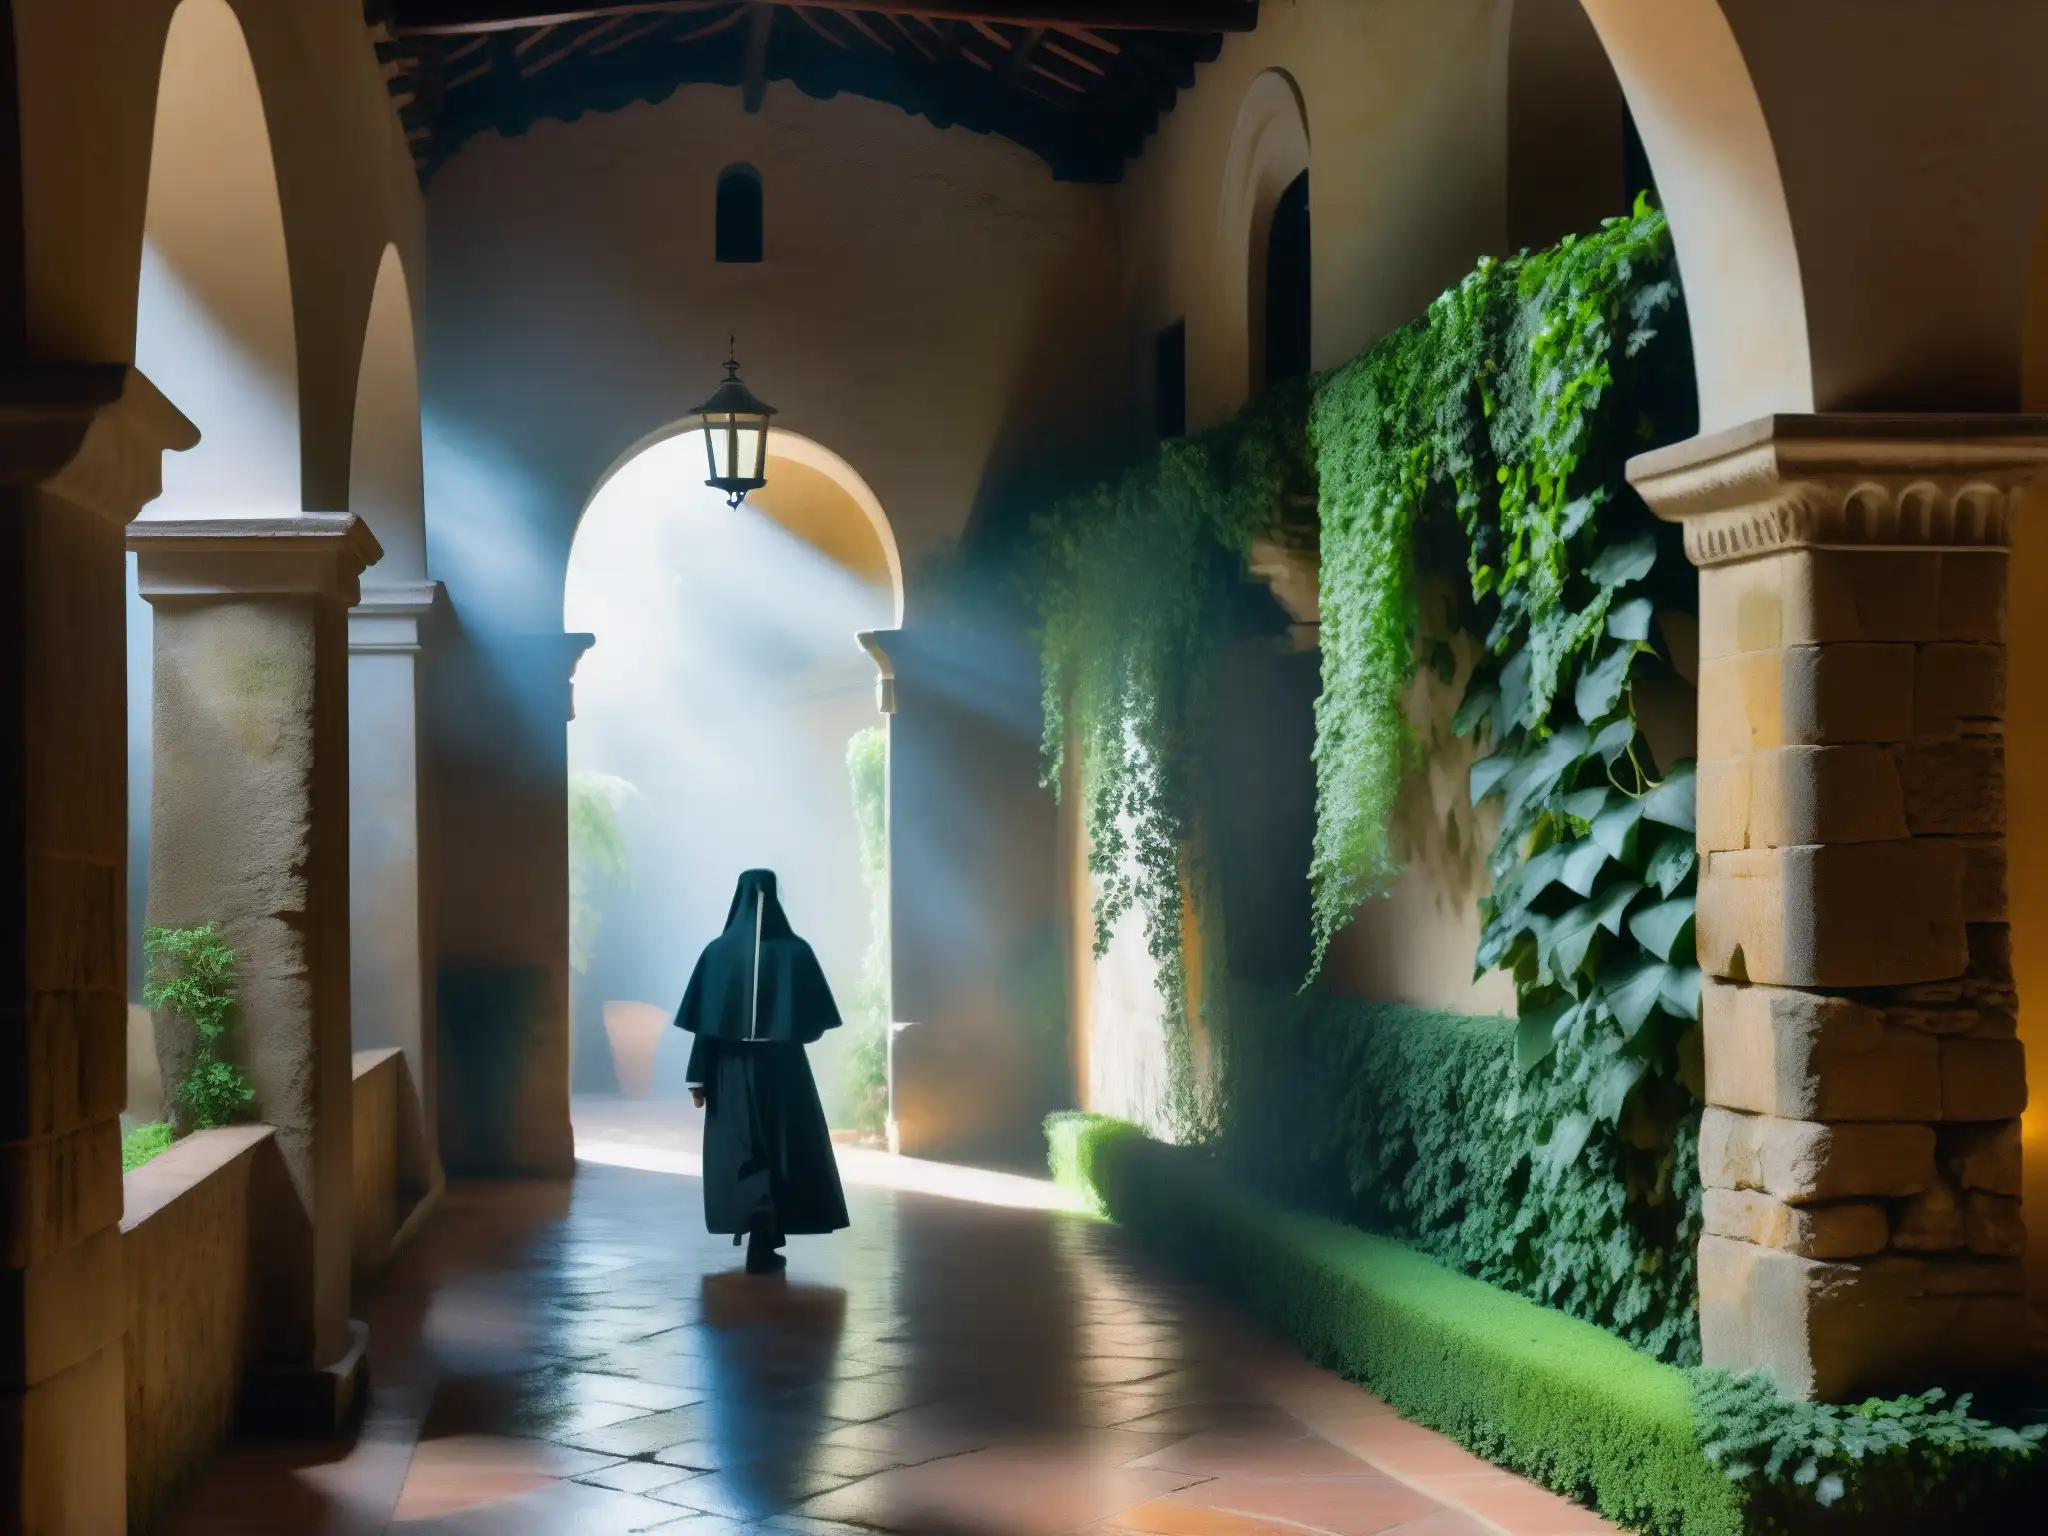 En el misterioso Convento de la Concepción, una figura fantasmal de monja se desliza entre la neblina y las sombras